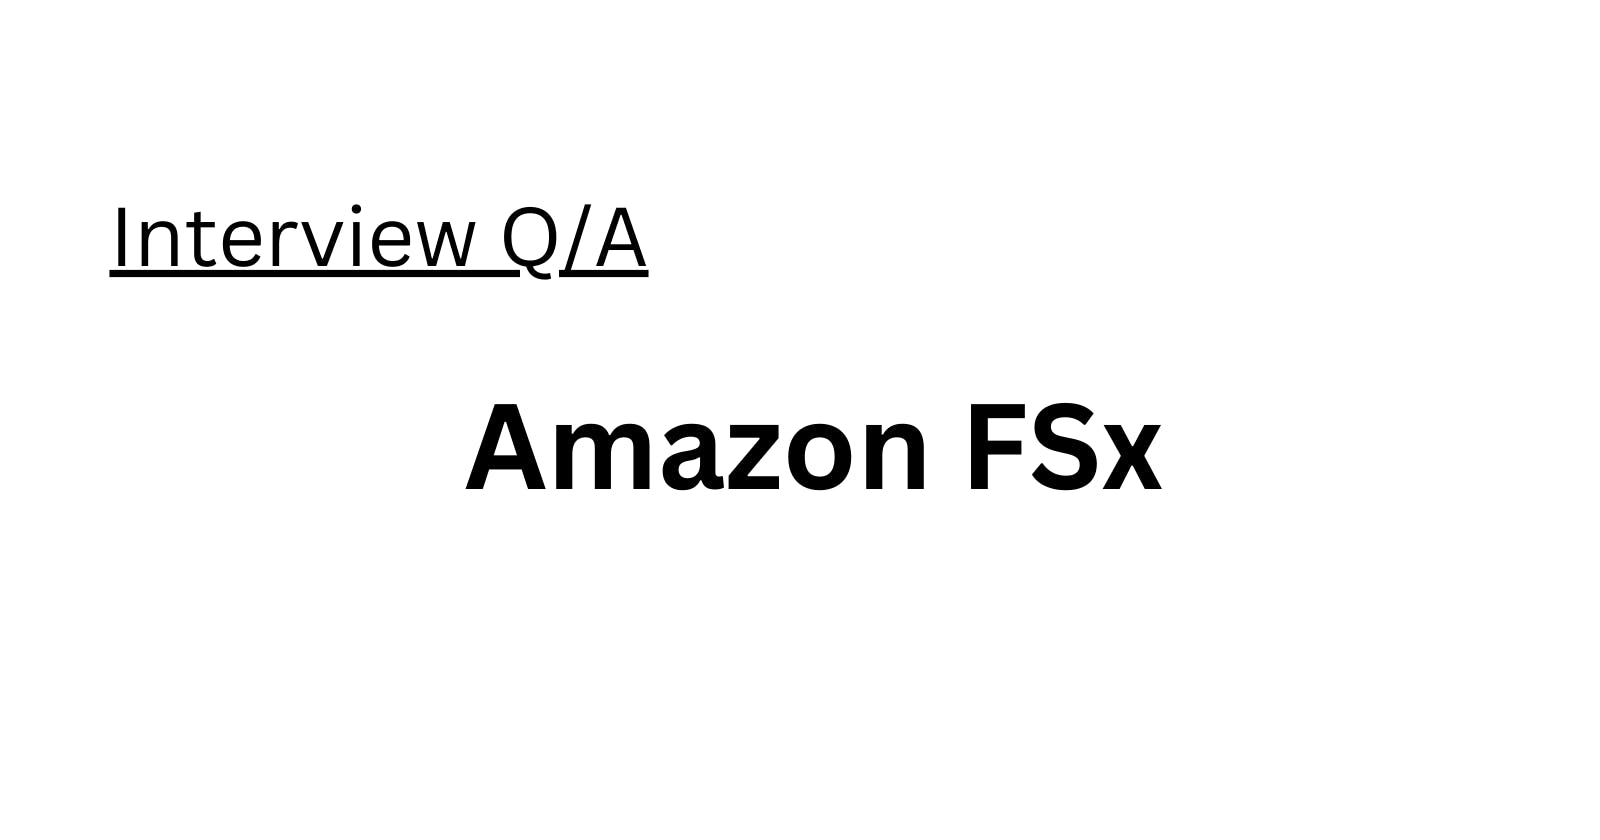 Amazon FSx Interview Q/A